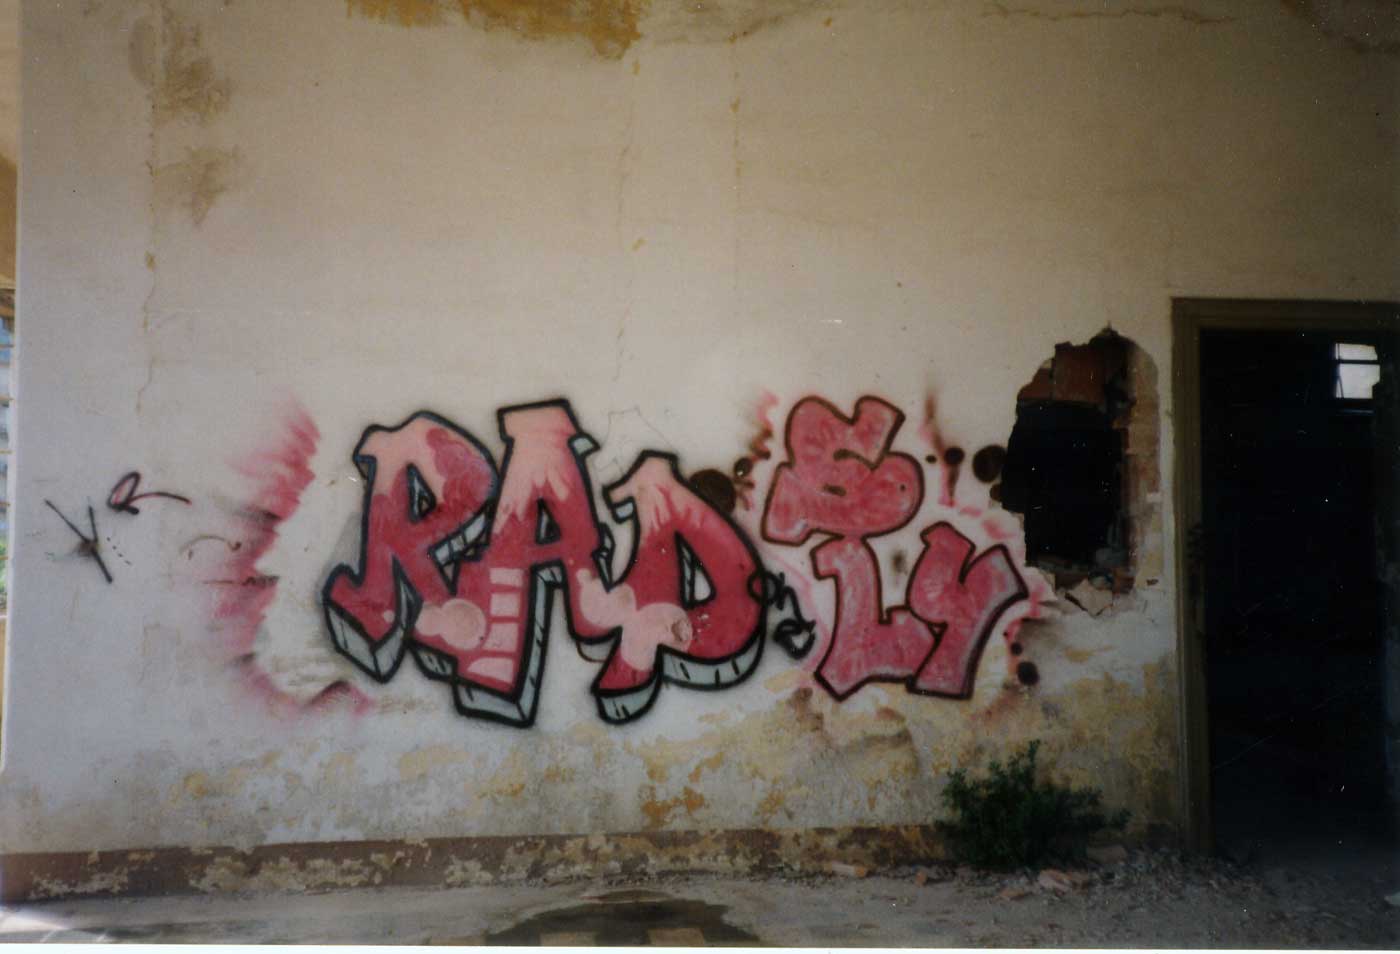 Radon2, Sly